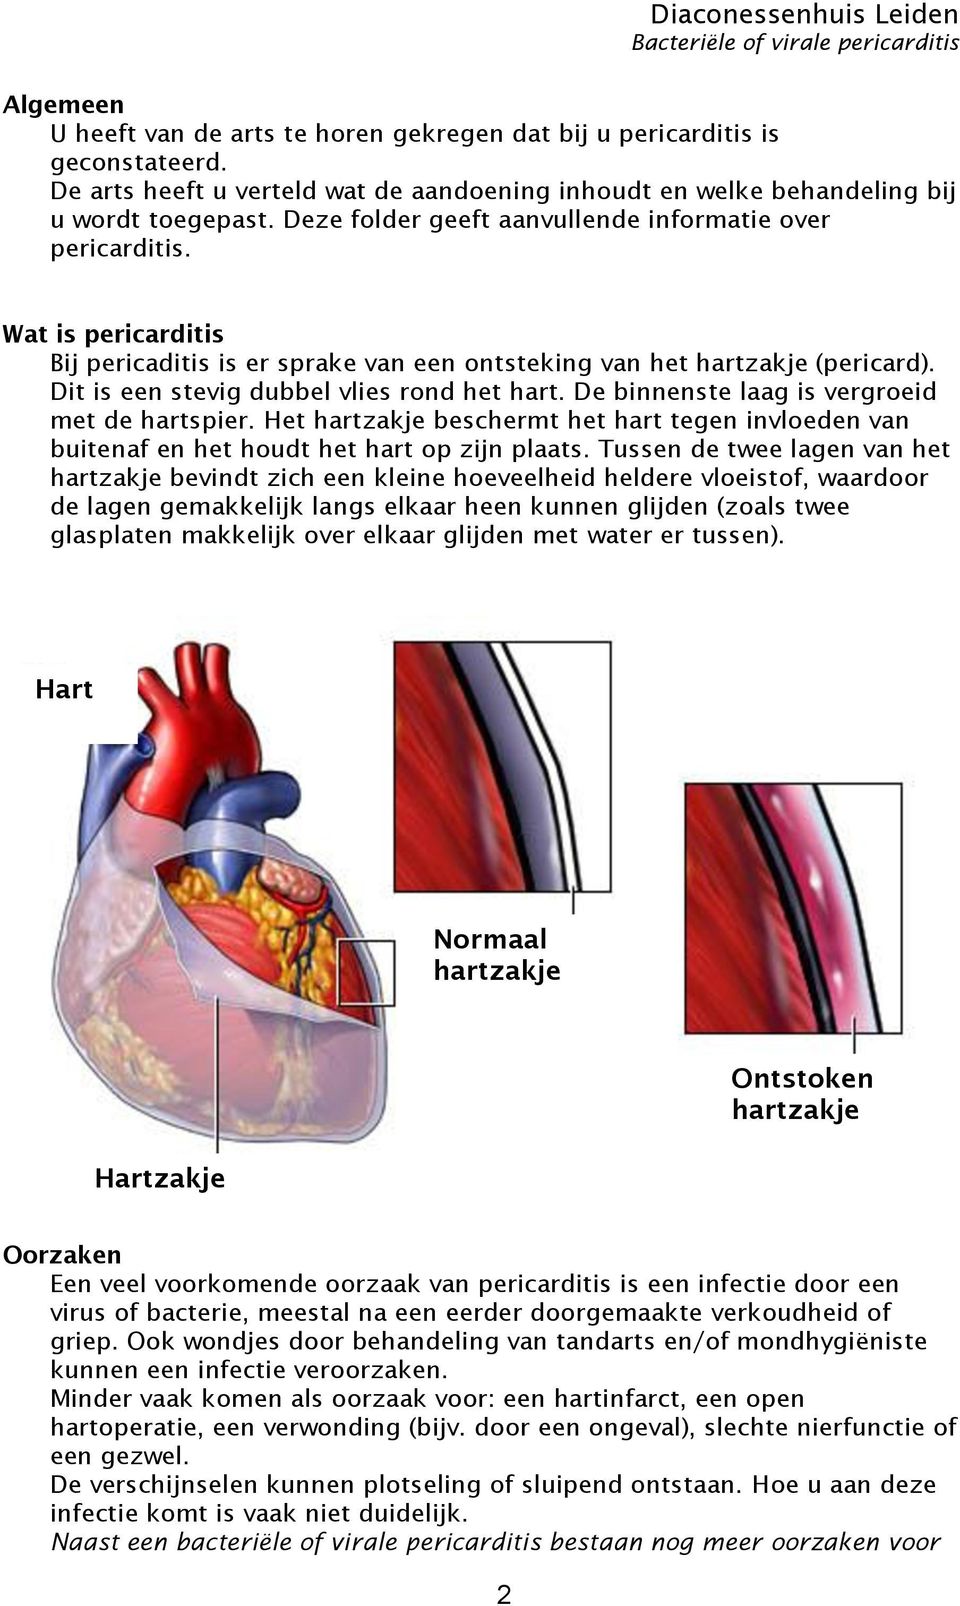 Dit is een stevig dubbel vlies rond het hart. De binnenste laag is vergroeid met de hartspier. Het hartzakje beschermt het hart tegen invloeden van buitenaf en het houdt het hart op zijn plaats.